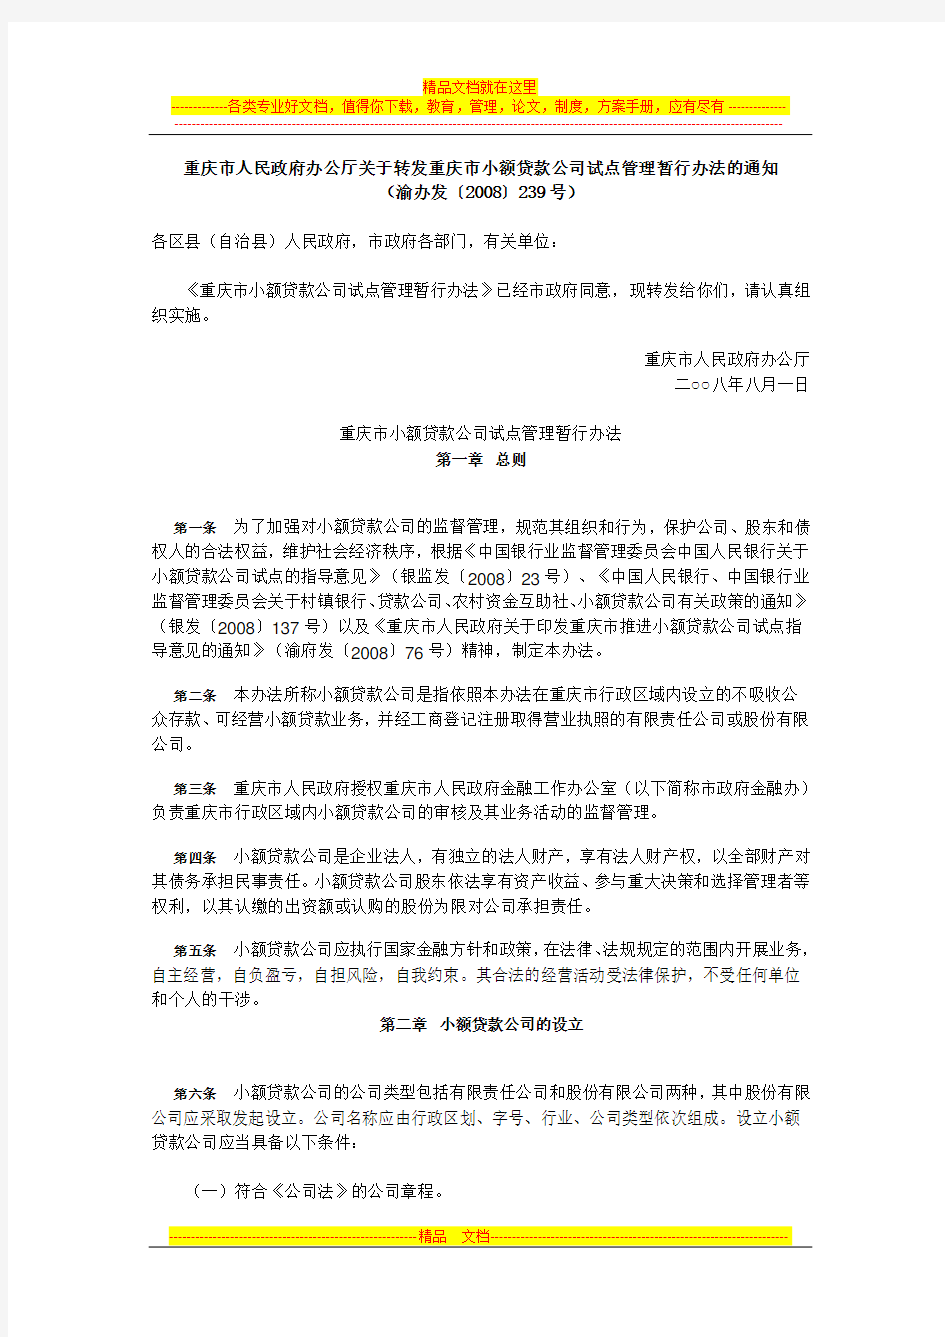 重庆市小额贷款公司试点管理暂行办法